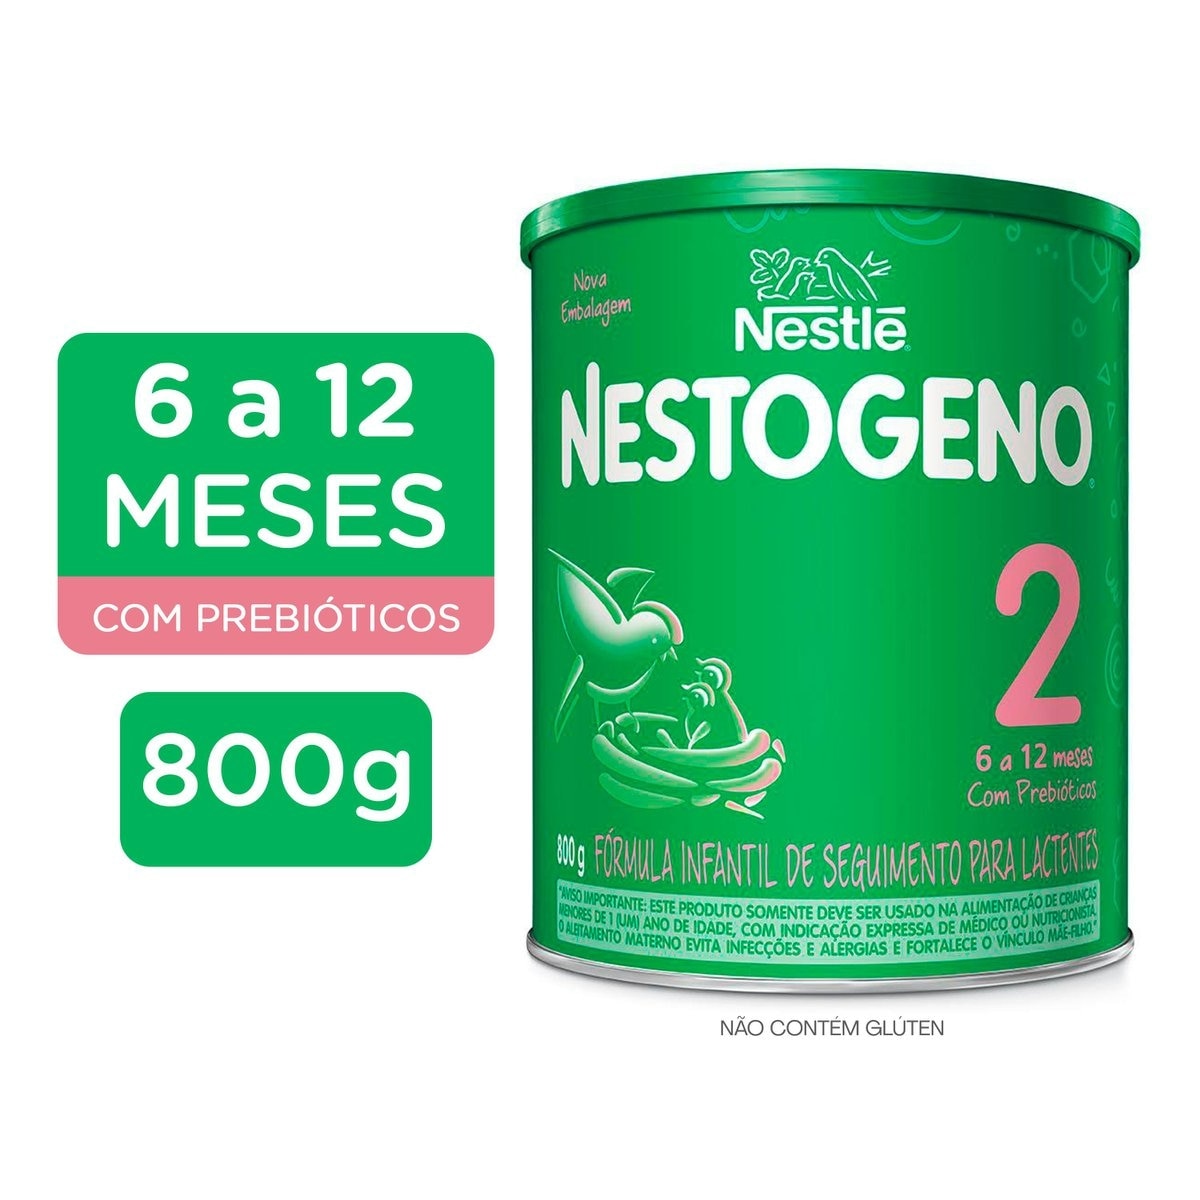 Formula Infantil Nestogeno 2 800g